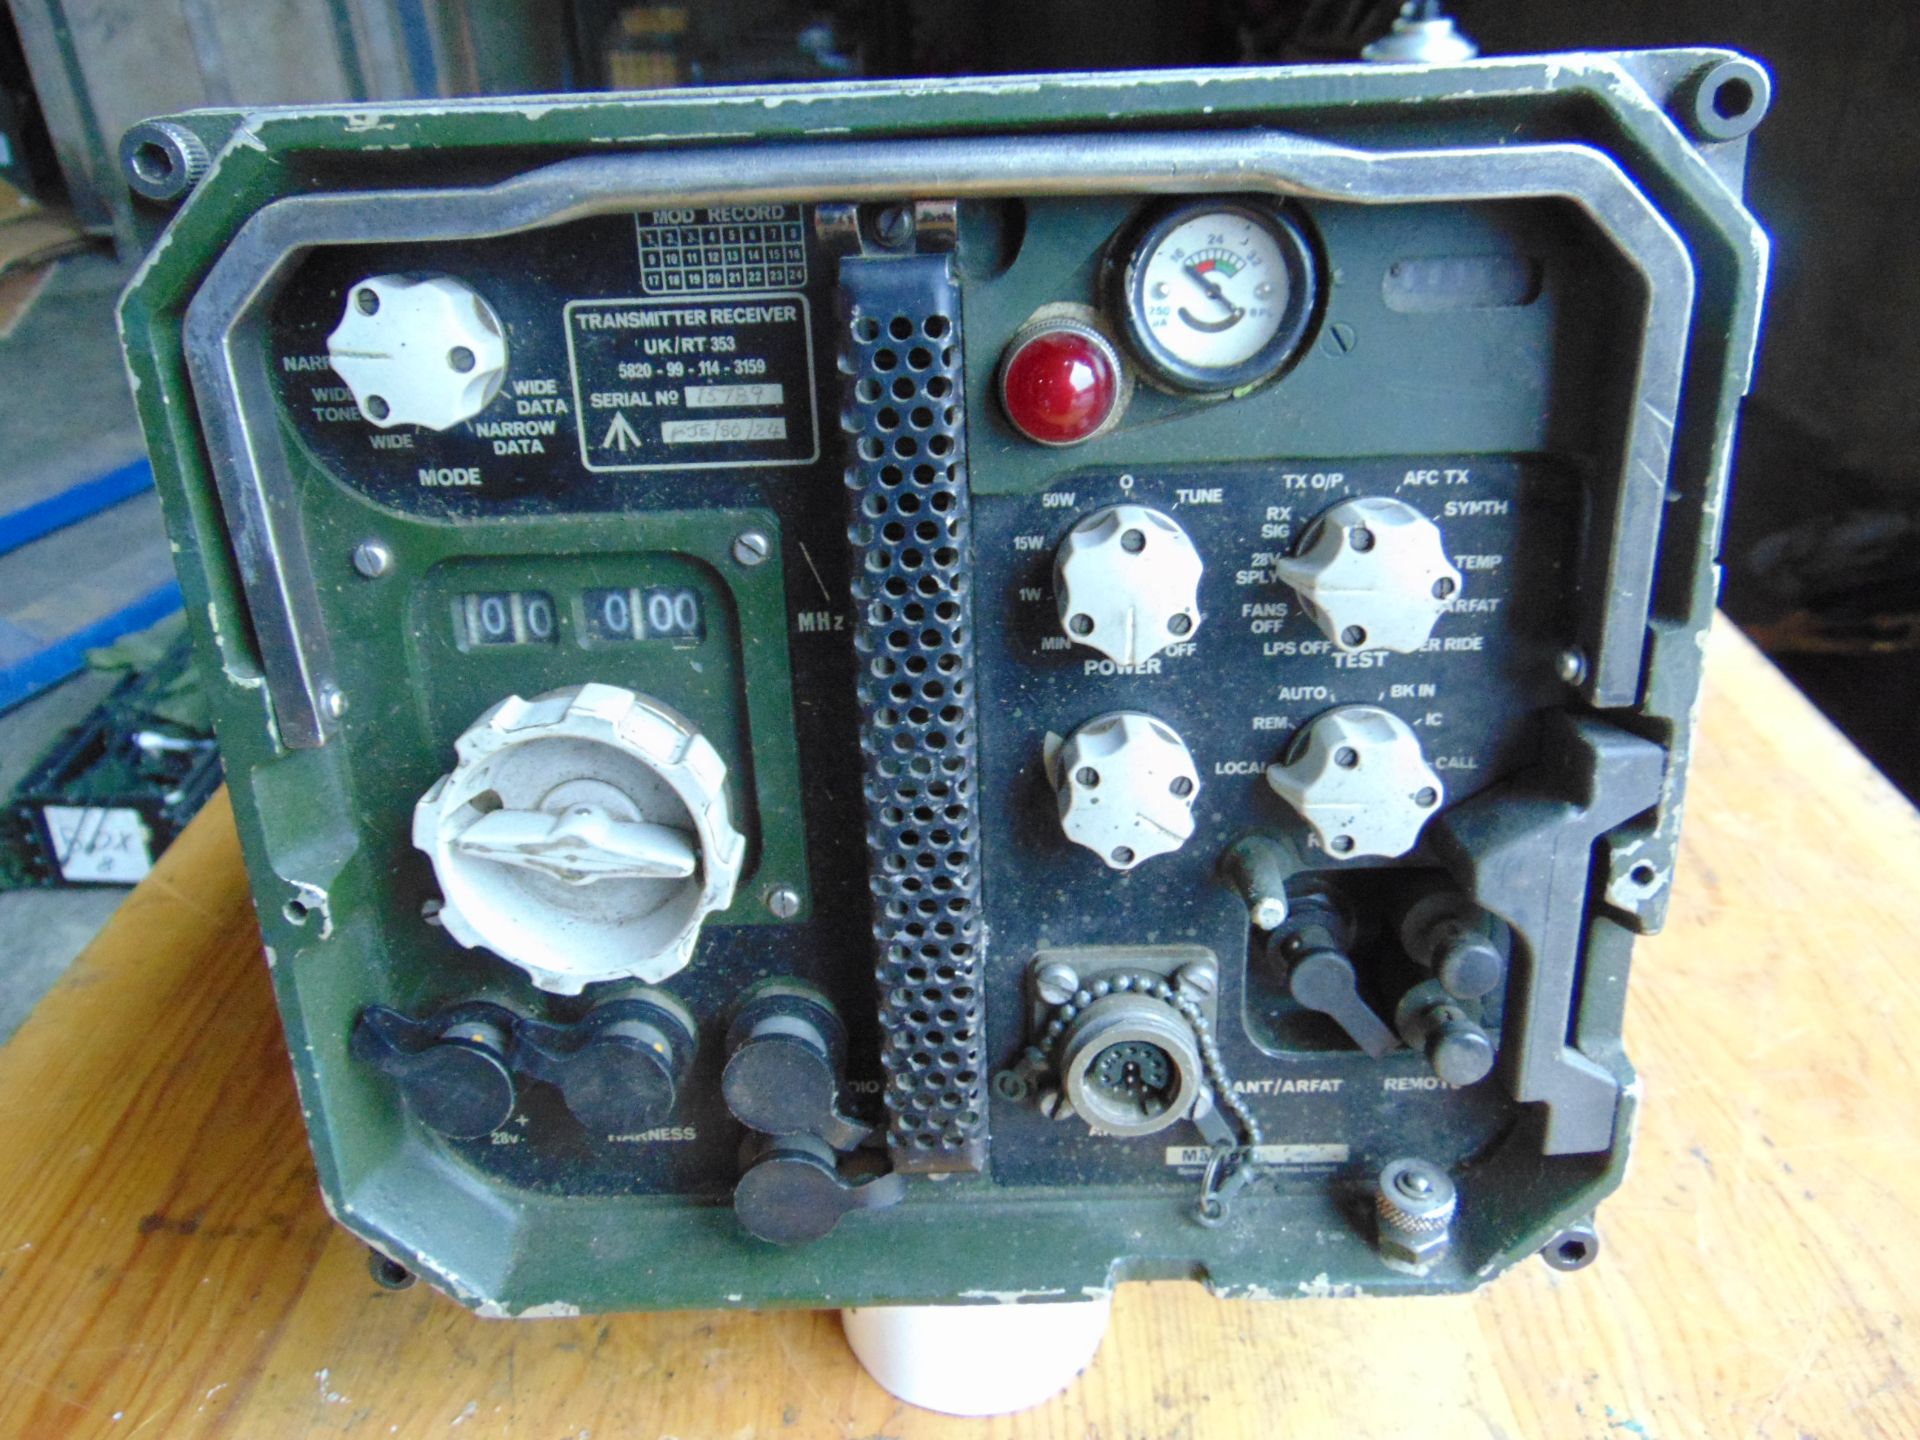 Clansman UK RT 353 VHF Transmitter Receiver Radio - Image 3 of 5